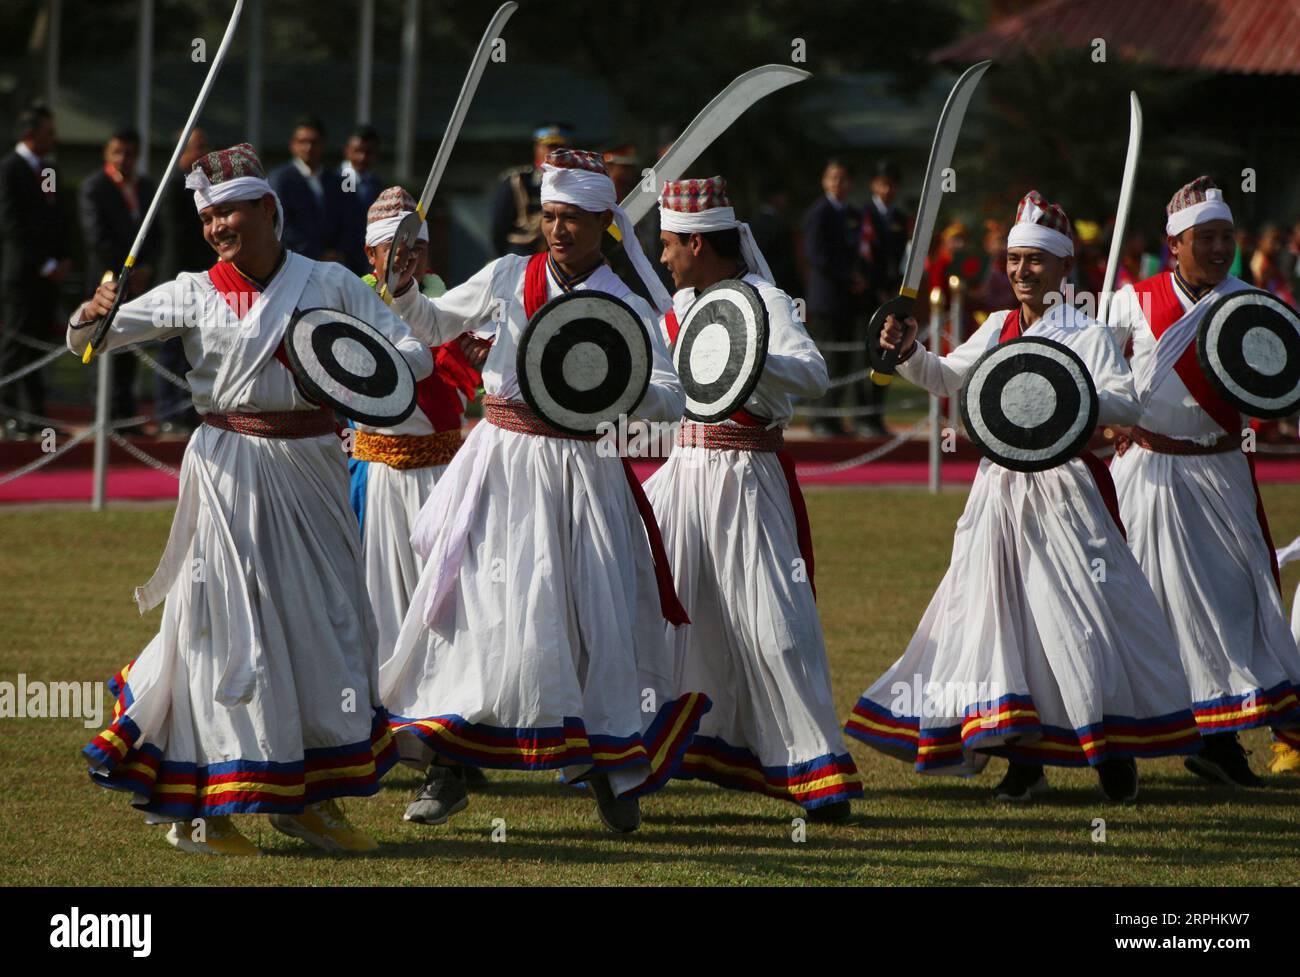 191112 -- KATMANDOU, le 12 novembre 2019 -- des danseurs népalais en tenue traditionnelle se produisent lors de l'accueil du président du Bangladesh, M. Abdul Hamid, à l'aéroport international Tribhuvan de Katmandou, capitale du Népal, le 12 novembre 2019. Le président du Bangladesh, M. Abdul Hamid, est arrivé mardi à Katmandou pour une visite officielle de bonne volonté de quatre jours. Str/Xinhua NÉPAL-KATMANDOU-PRÉSIDENT DU BANGLADESH- VISITE sunilxsharma PUBLICATIONxNOTxINxCHN Banque D'Images